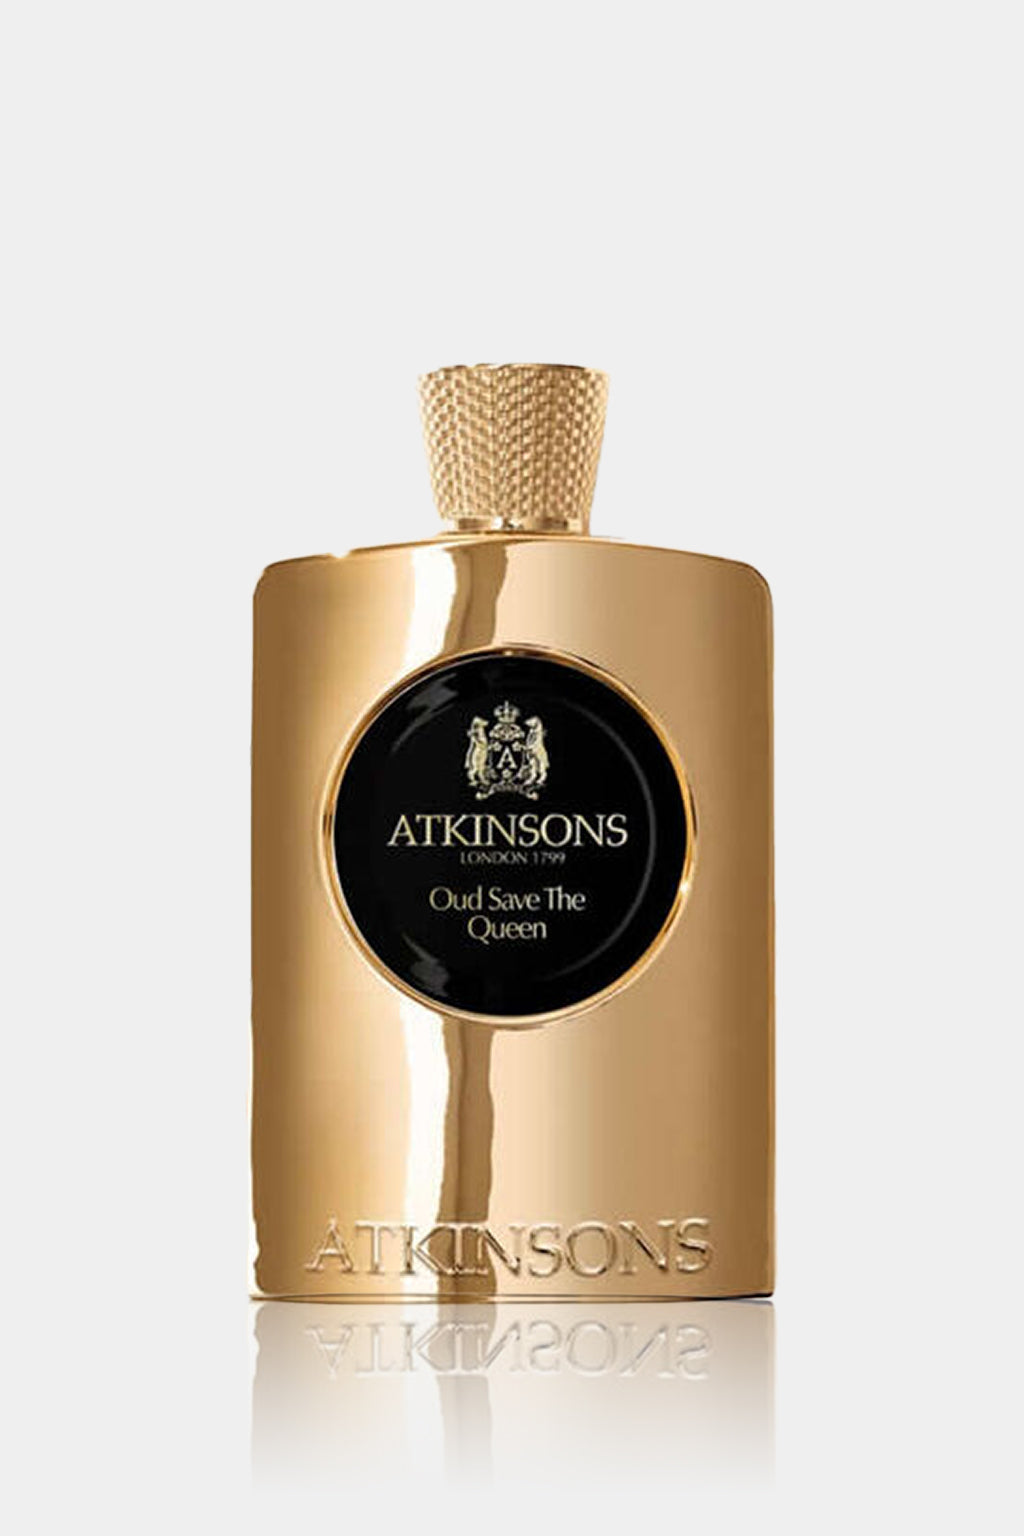 Atkinsons - Oud Save The Queen Eau de Parfum